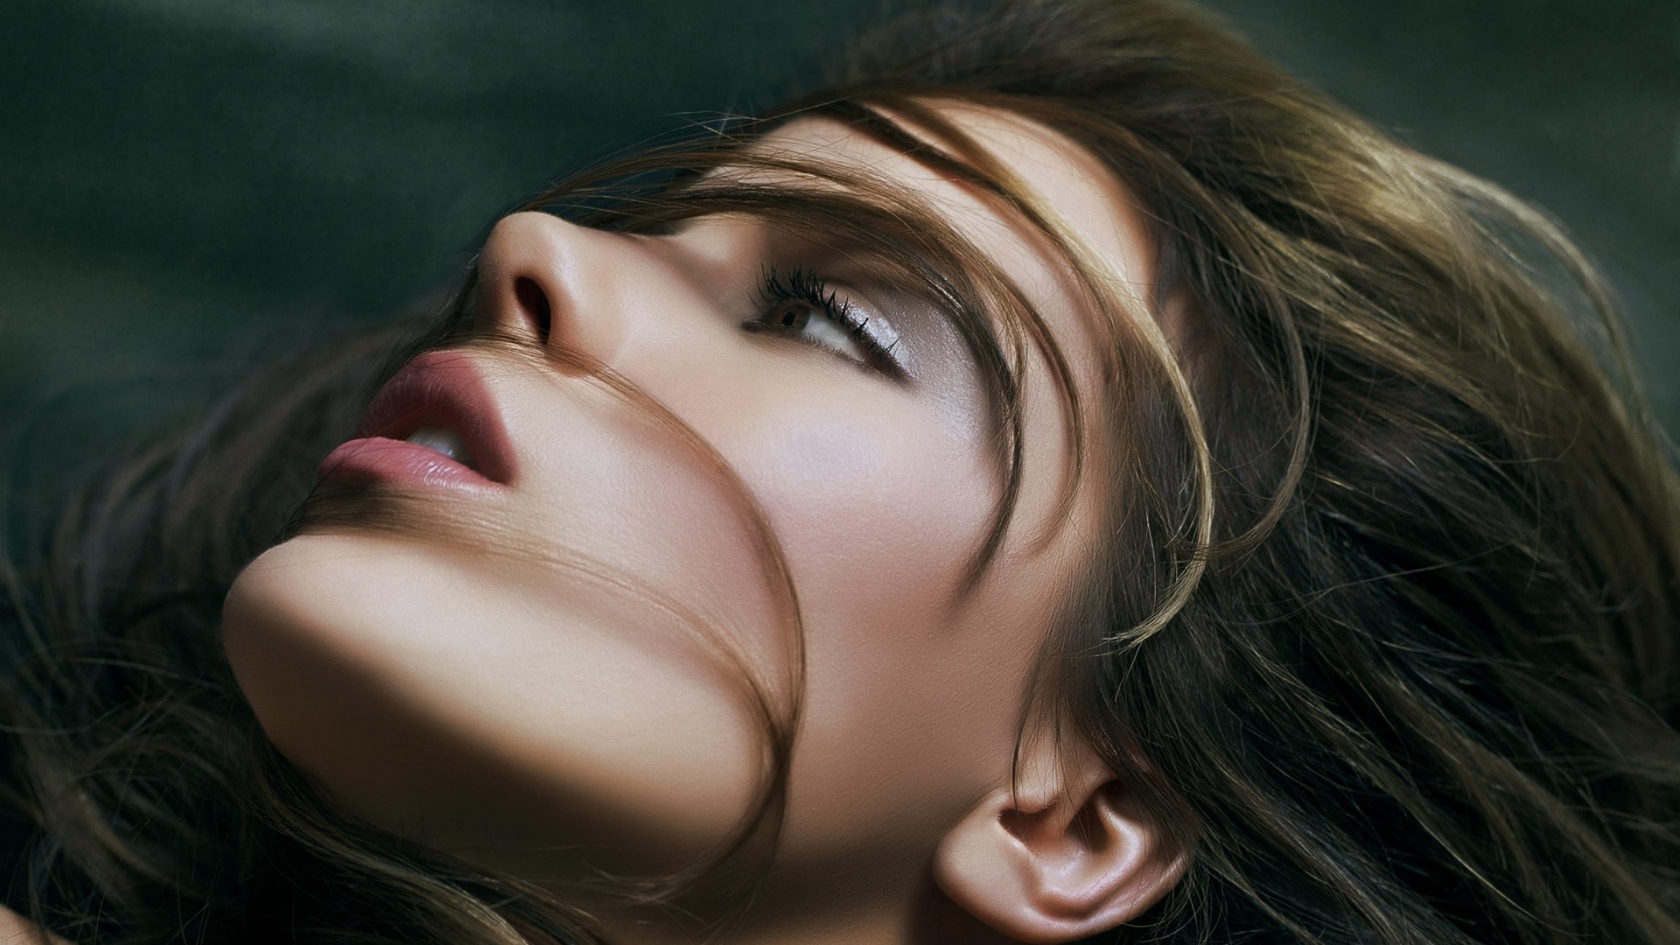 Kate Beckinsale Glamorous for 1680 x 945 HDTV resolution